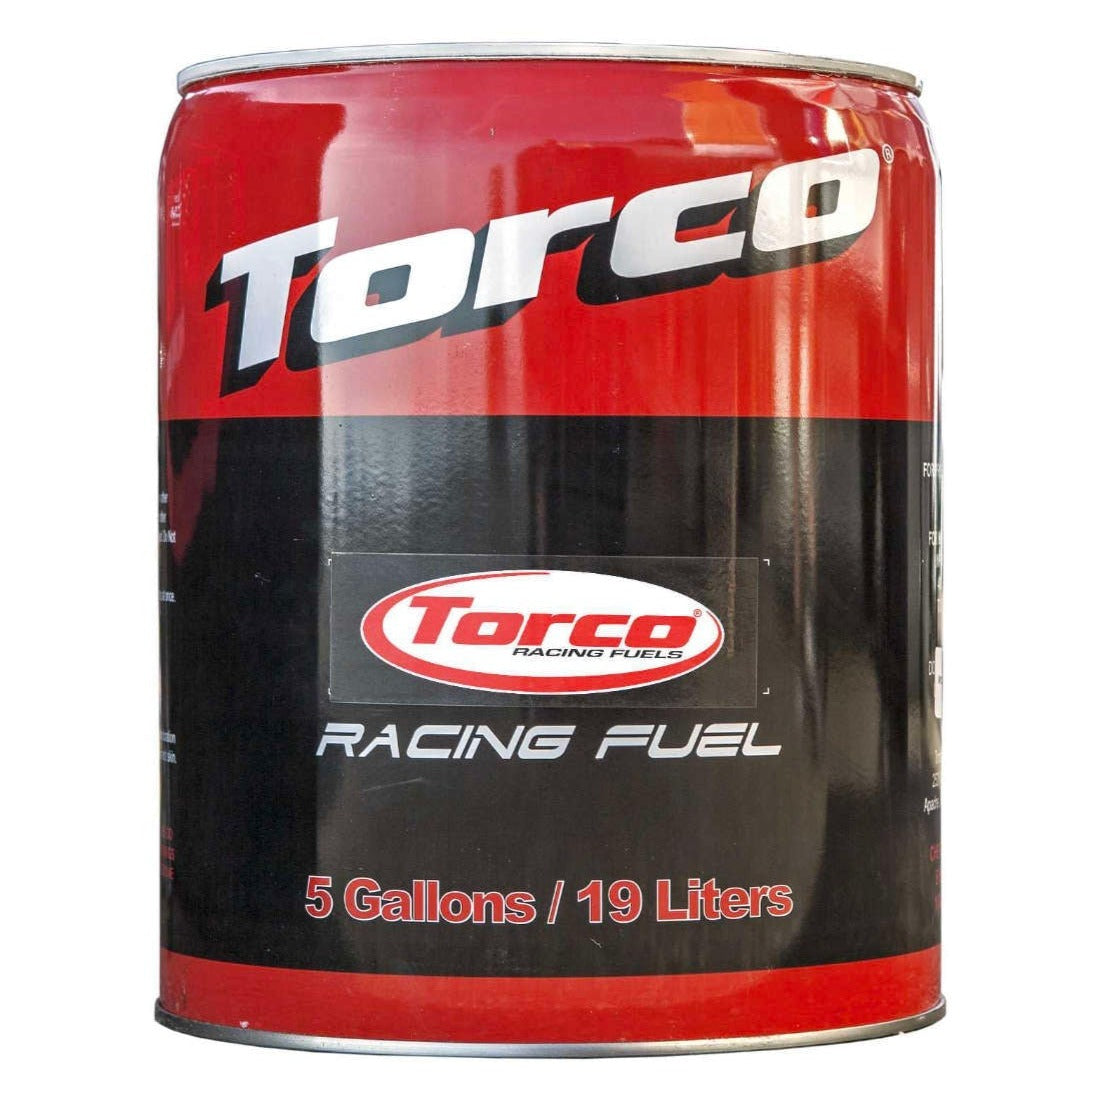 Torco Race Fuel 118 octane Leaded